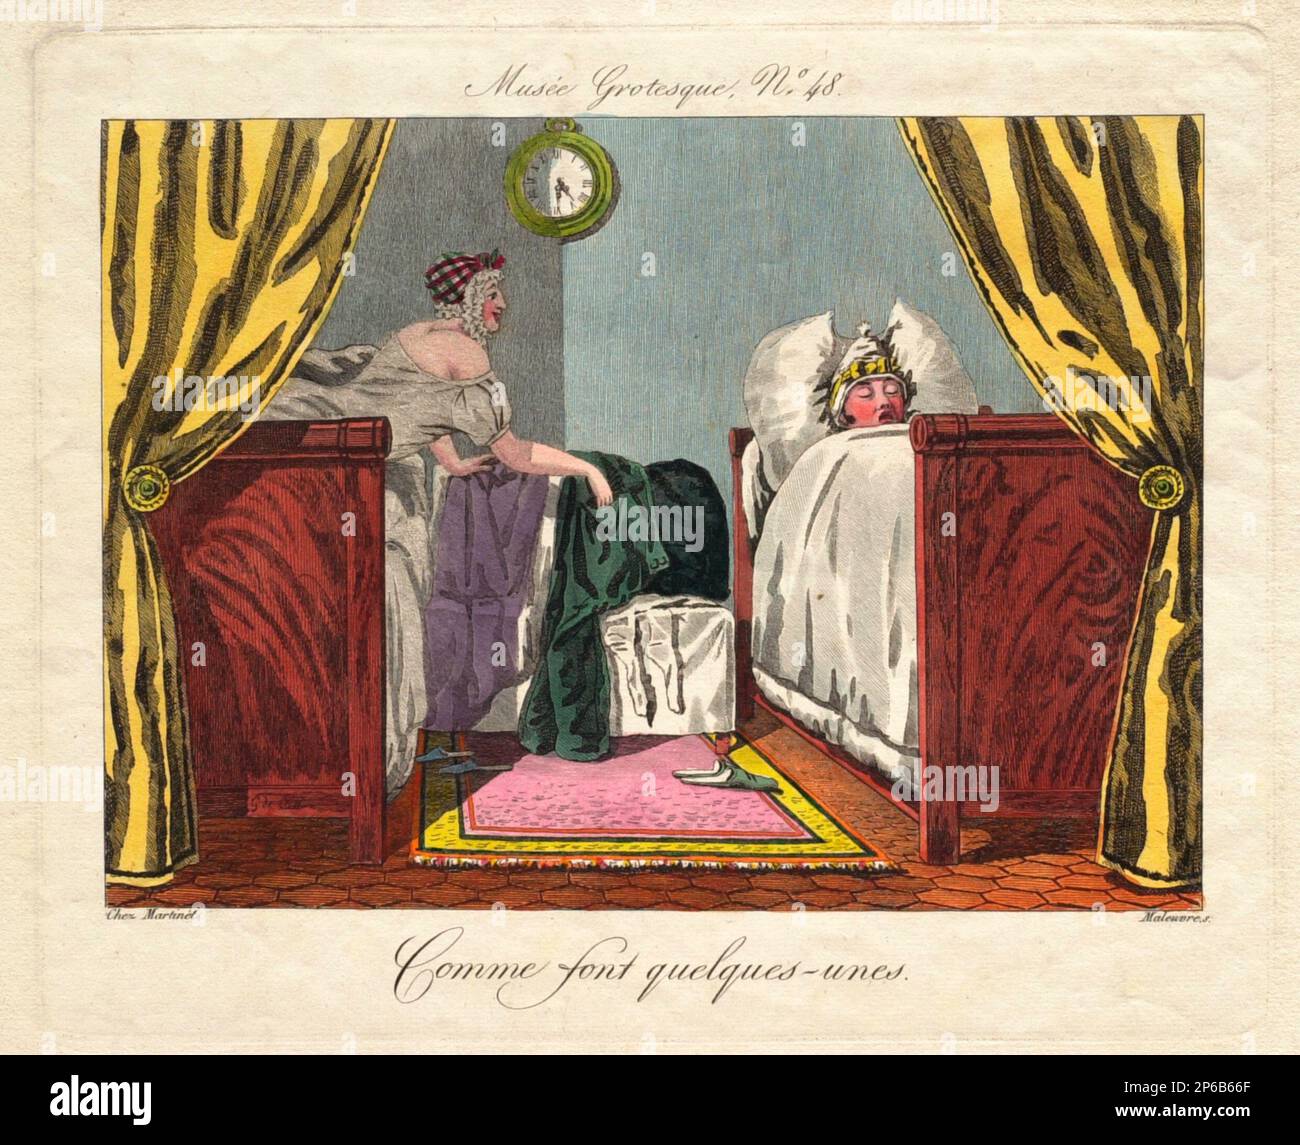 Pierre Maleuvre, Musée grotesque n° 48 : police de caractères de la série quelques-unes, 1802–1815, gravure sur papier. Banque D'Images